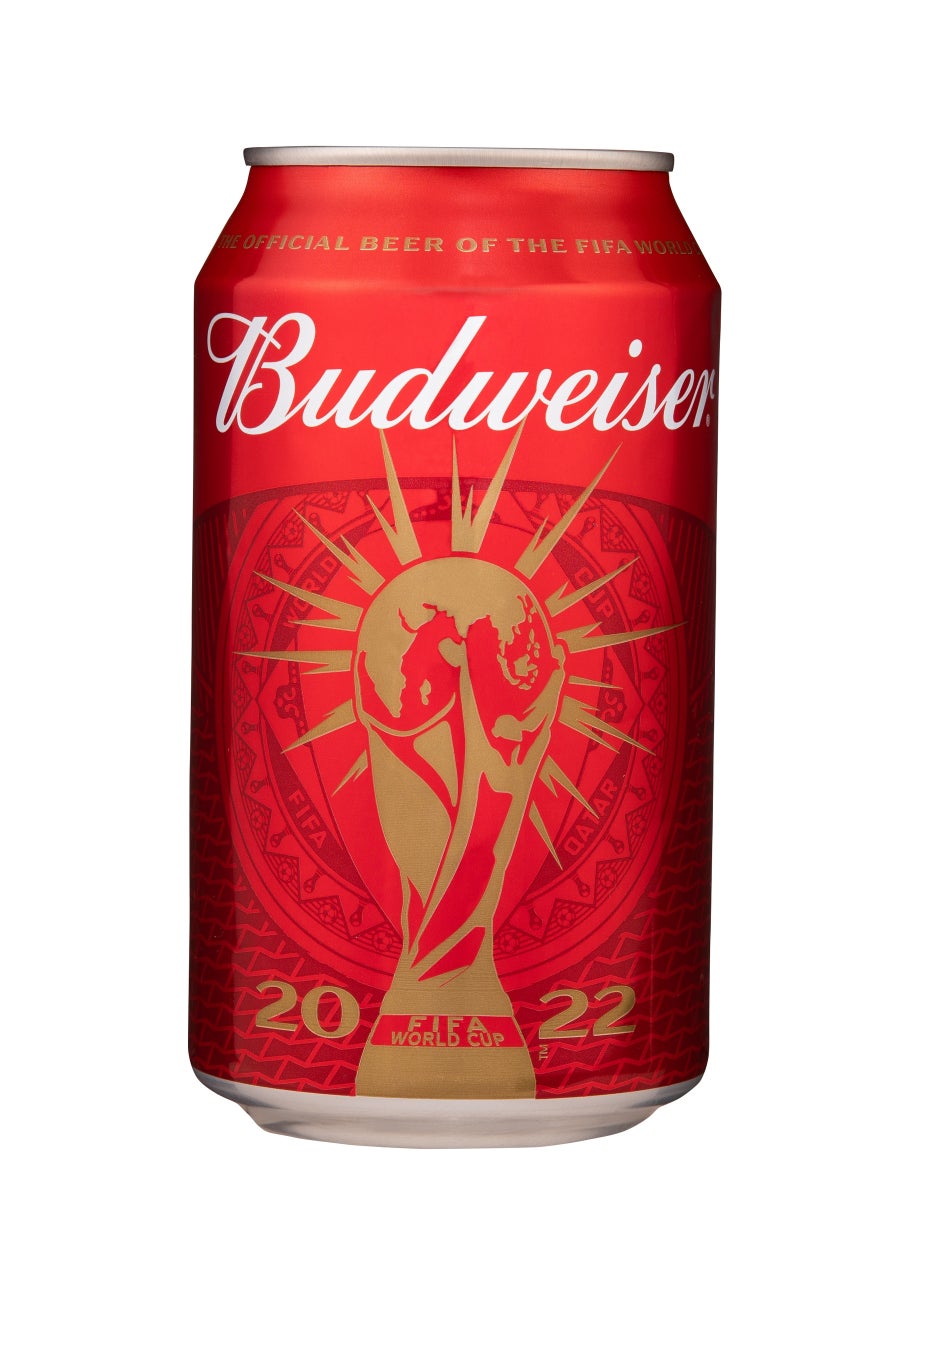 FIFAワールドカップ™の開催を記念して、Budweiserがグローバルキャンペーン